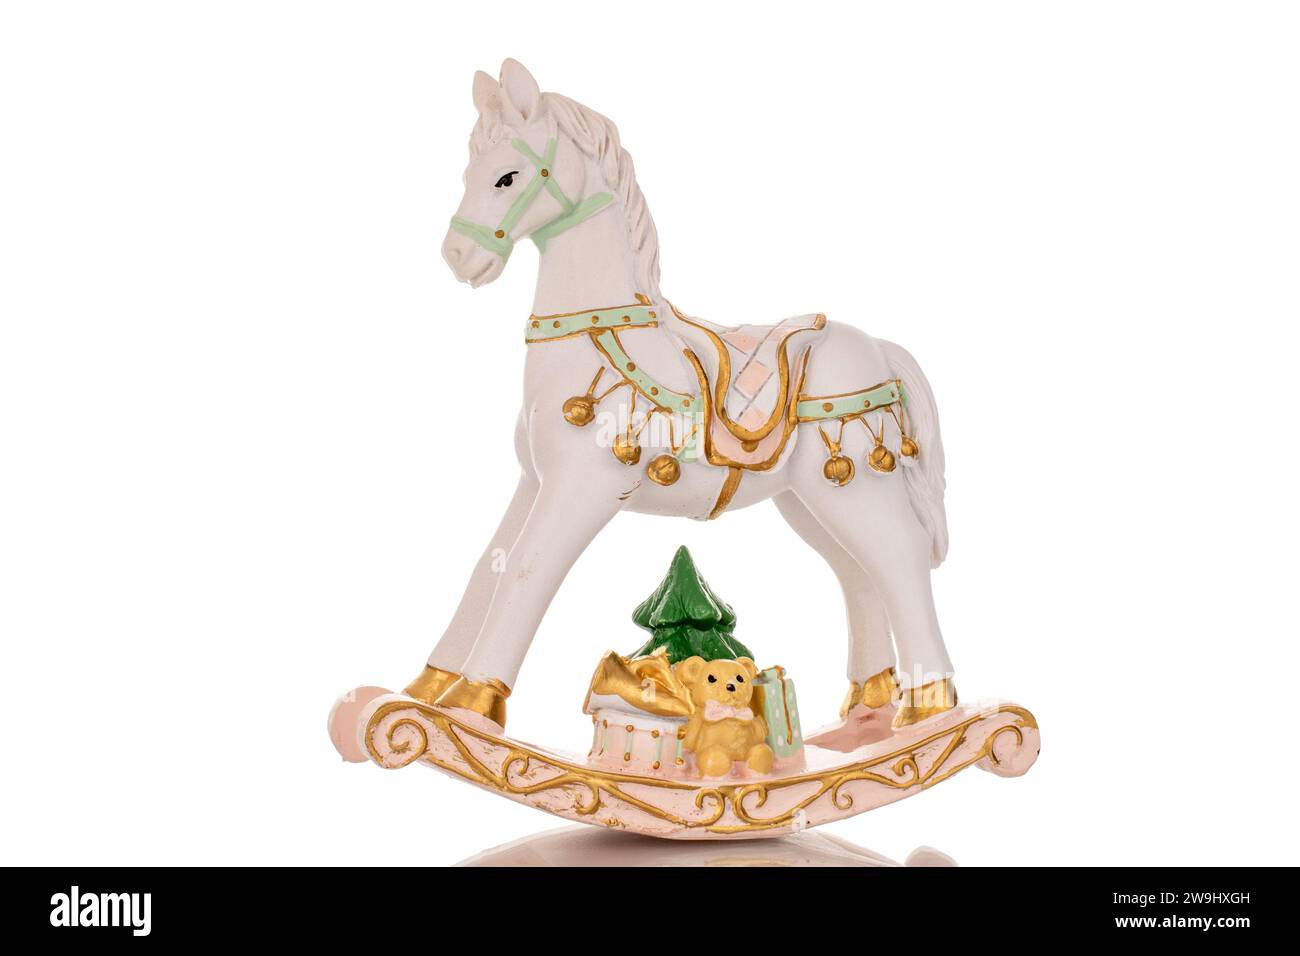 Un cavallo in ceramica giocattolo, macro, isolato su sfondo bianco. Foto Stock